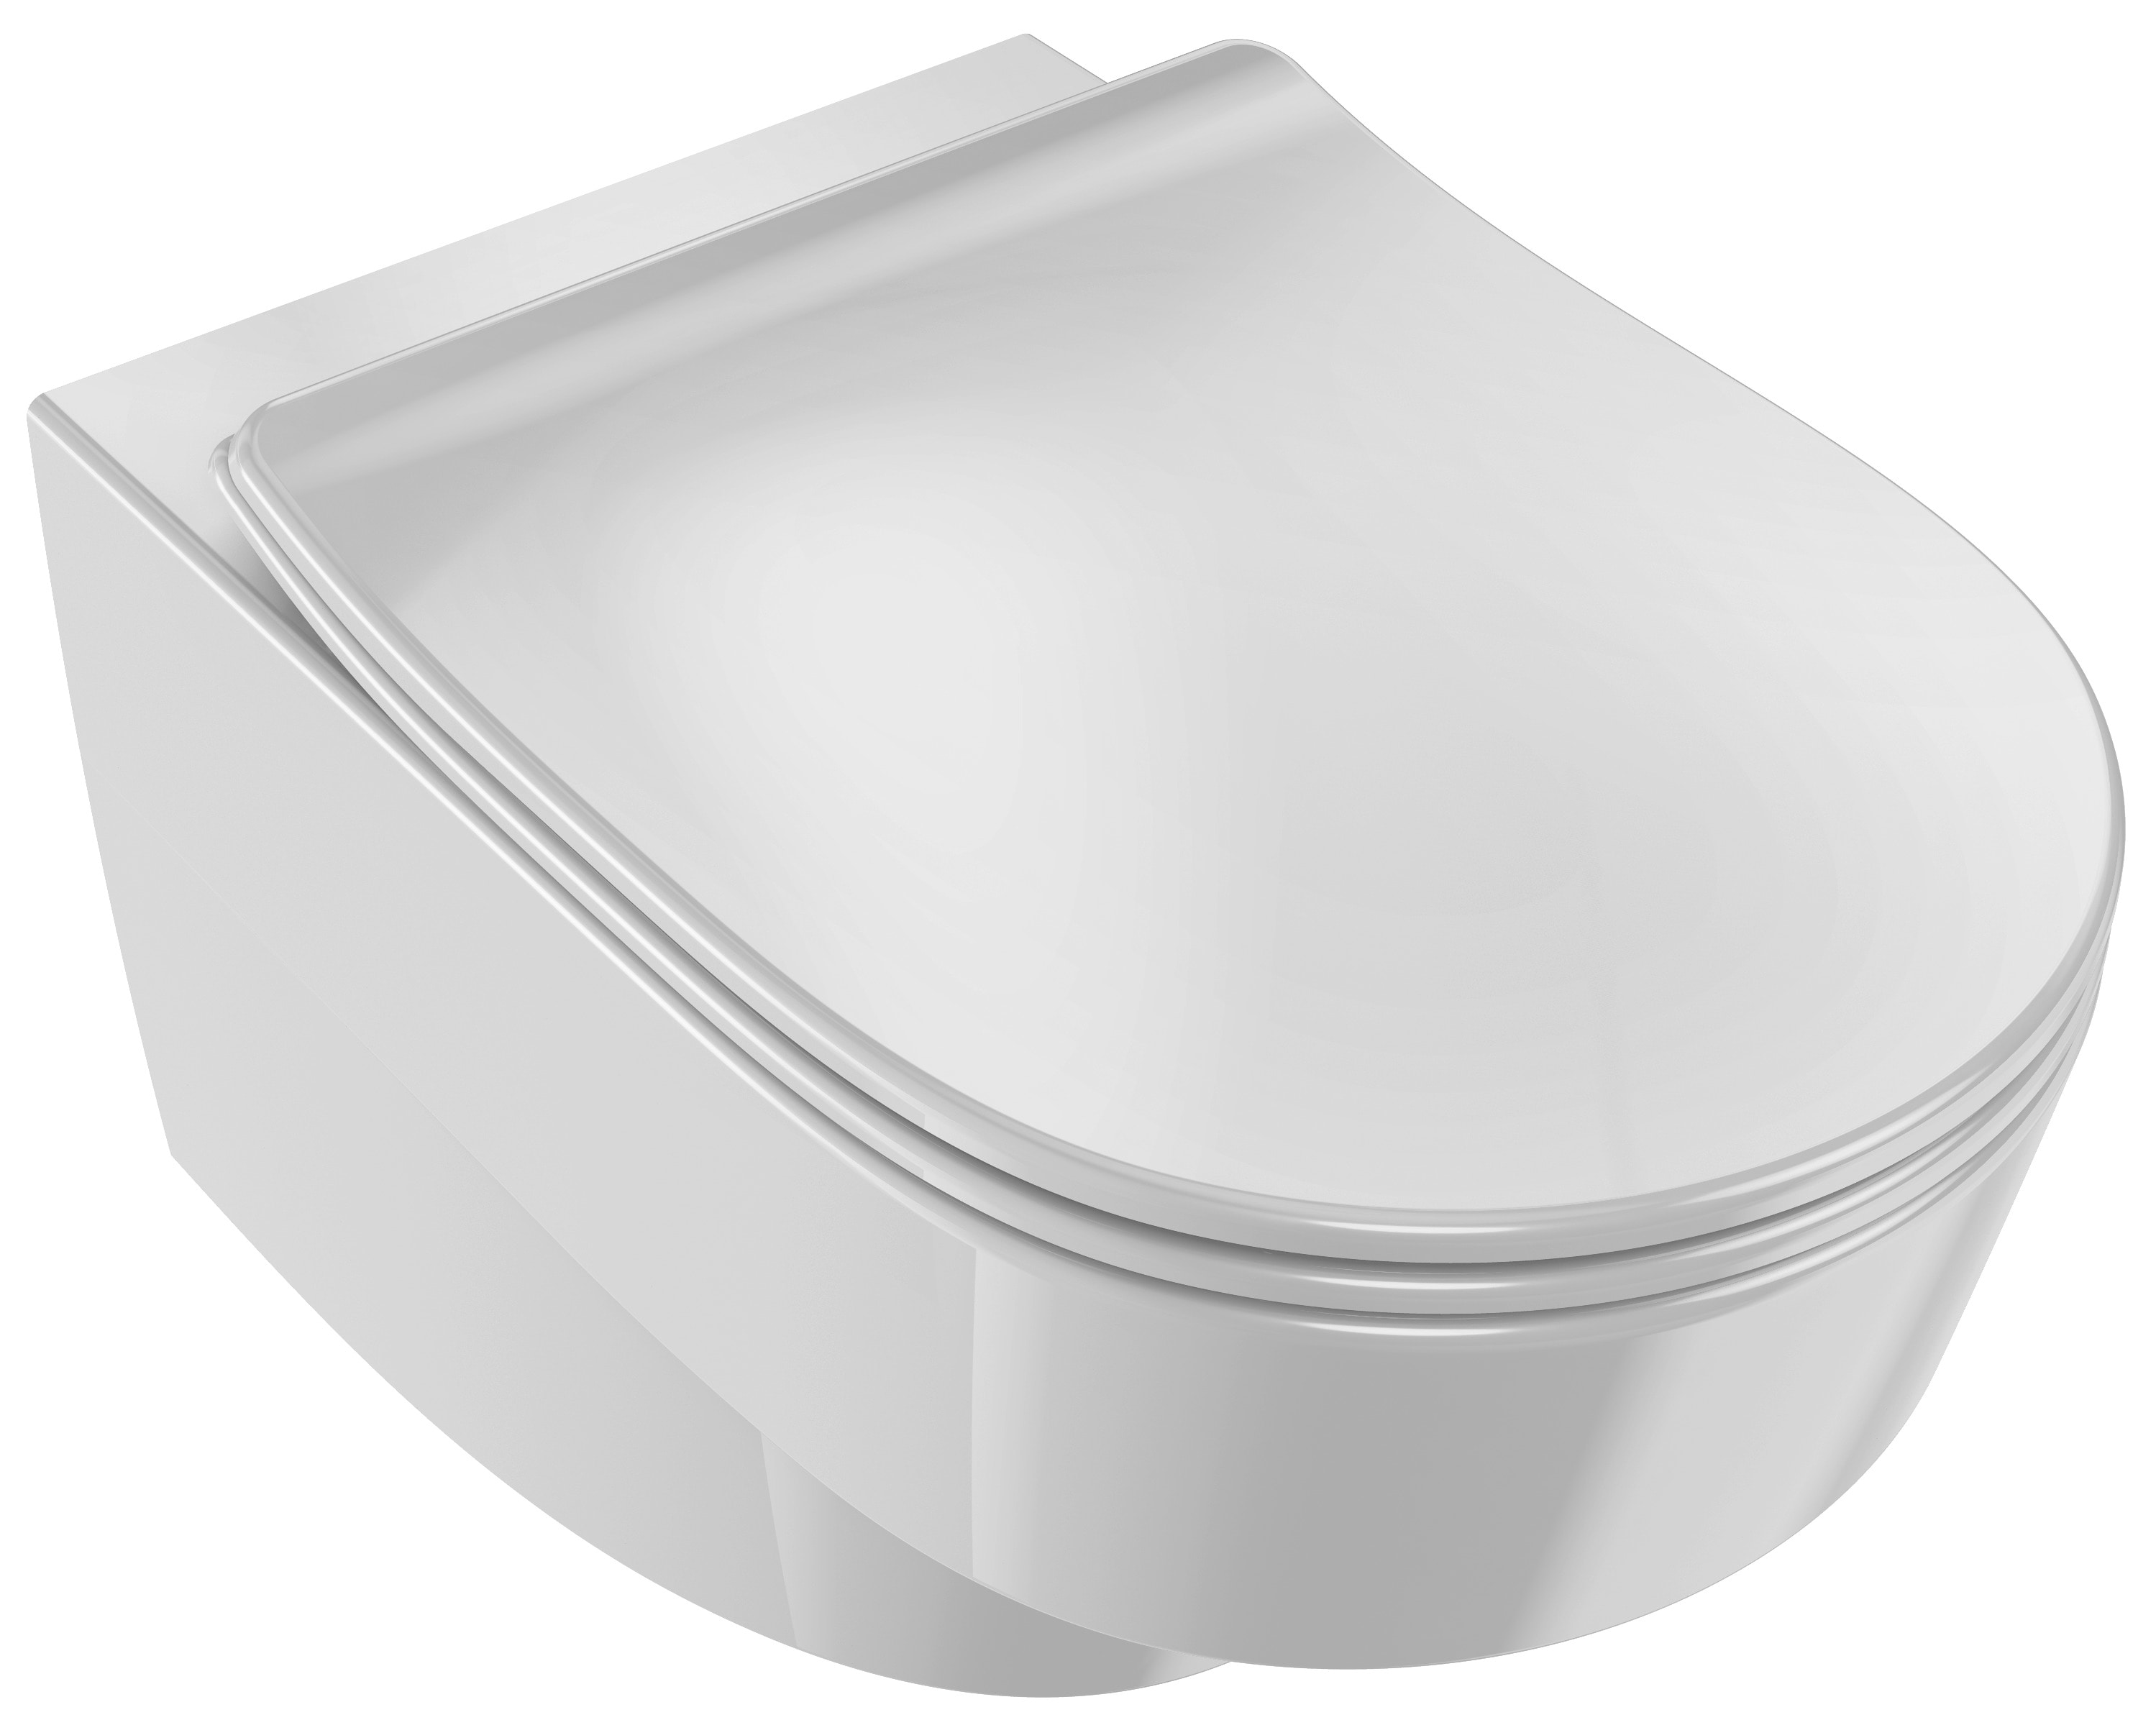 JACOB DELAFON WC completo Inodoro a suelo salida dual y alimentación  lateral con cisterna, asiento, codo y conexiones RODIN E77772-00 :  : Bricolaje y herramientas